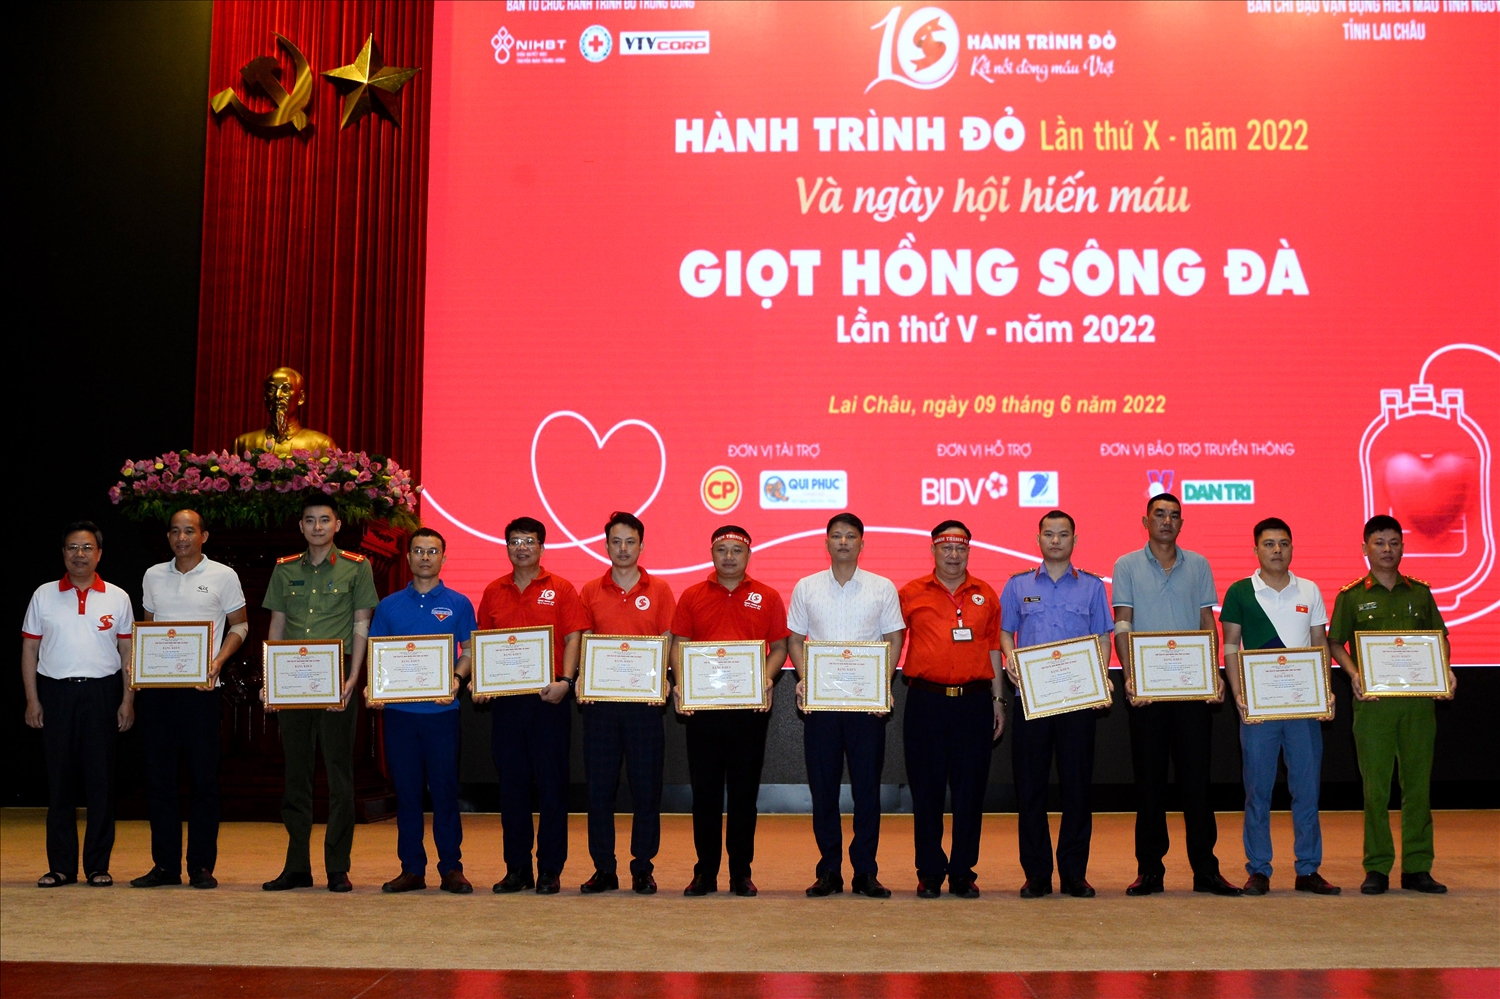 Tại Chương trình Hành trình Đỏ, Ban Chỉ đạo Vận động hiến máu tình nguyện tại Lai Châu đã biểu dương, khen thưởng khen cho 4 tập thể, 79 cá nhân, 4 hộ gia đình có thành tích xuất sắc trong hiến máu và vận động hiến máu tình nguyện năm 2022